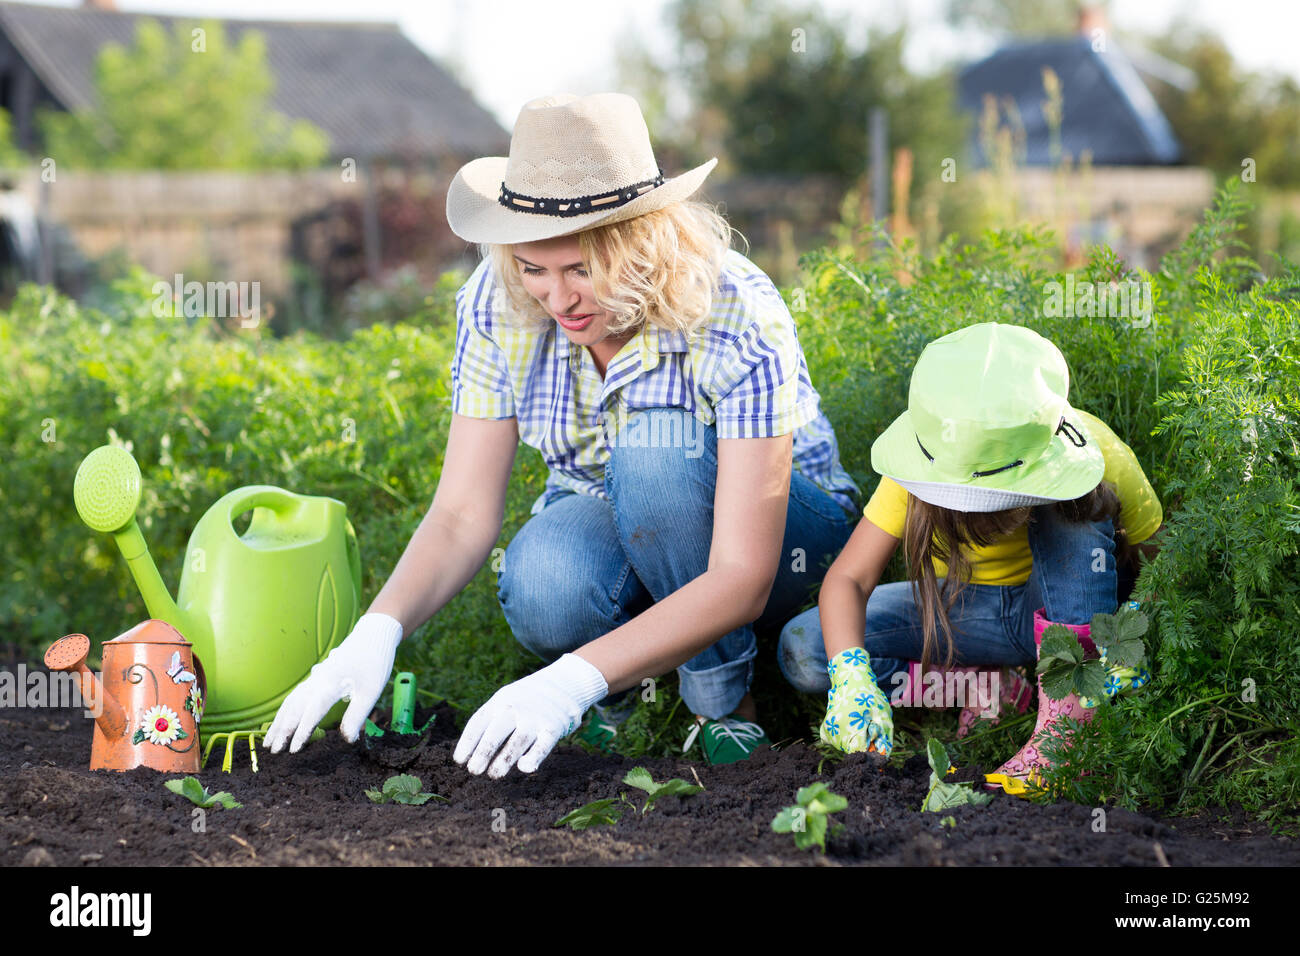 Jardinage, plantation - Mère avec enfant fille fraise en semis de plantes garden bed Banque D'Images